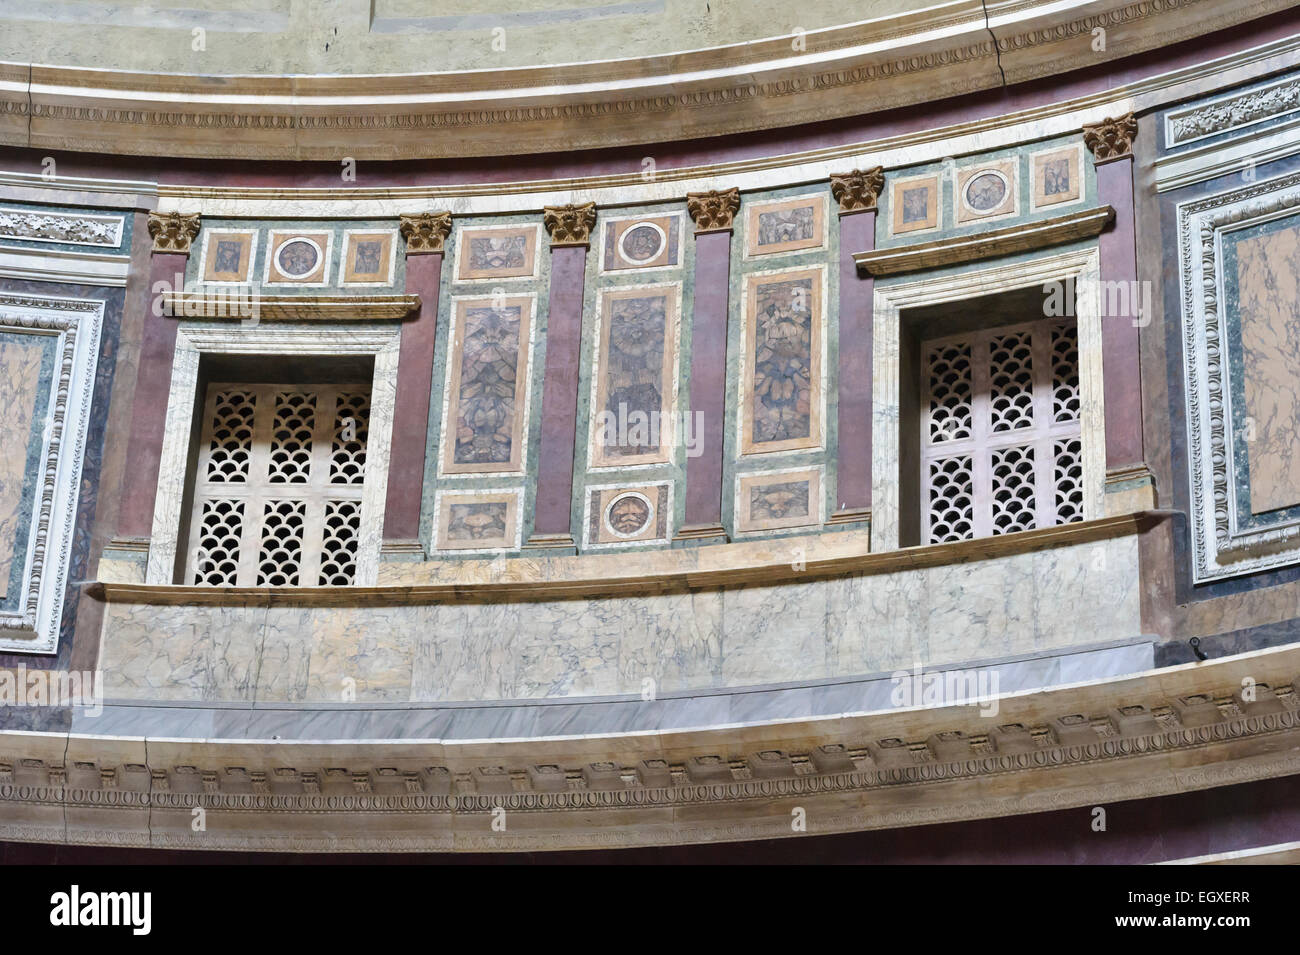 Le mur intérieur en marbre du Panthéon, Rome, Italie. Banque D'Images